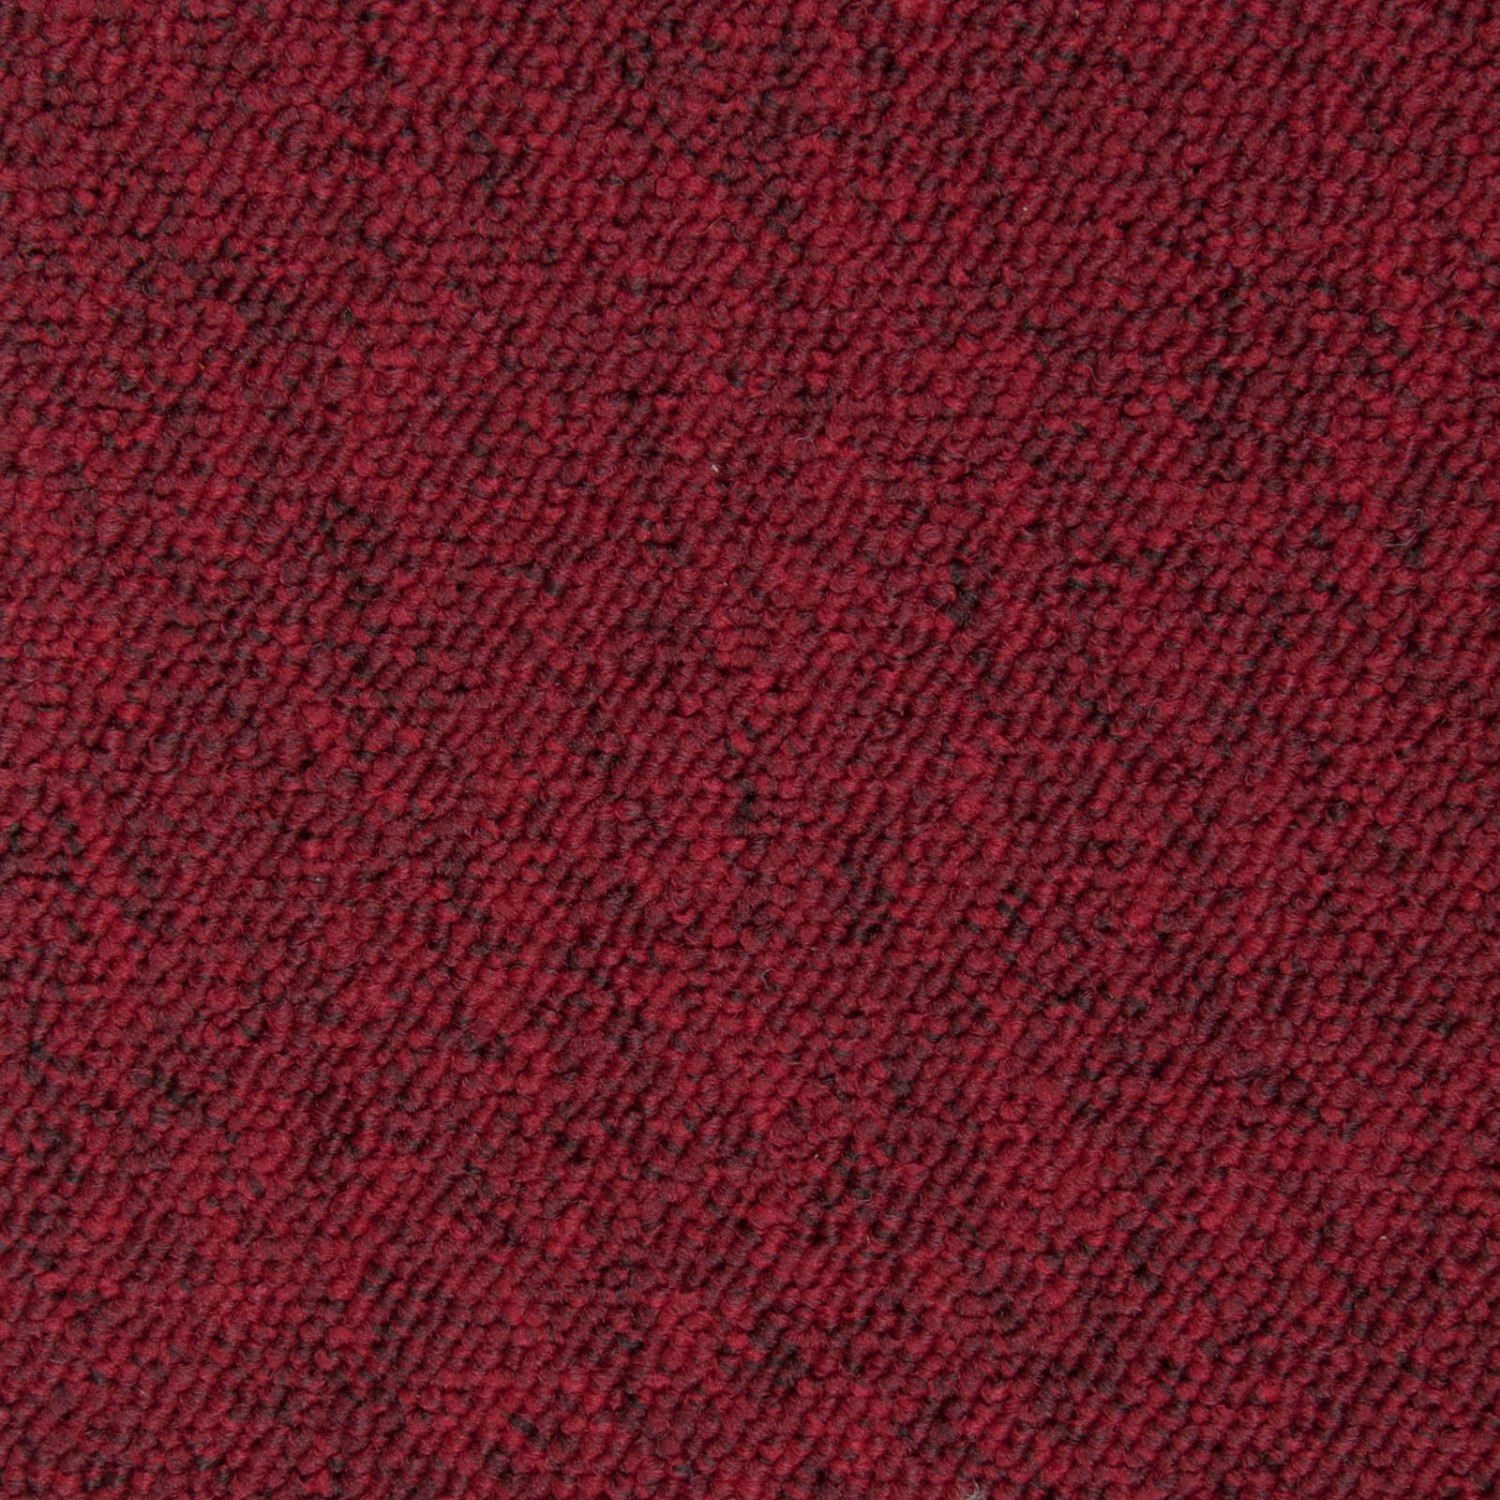 Schatex Selbstliegende Teppichfliesen Rot Schlingenteppich Als Fliesen In 50x50 Cm Für Arbeitszimmer Und Büro Teppichbod